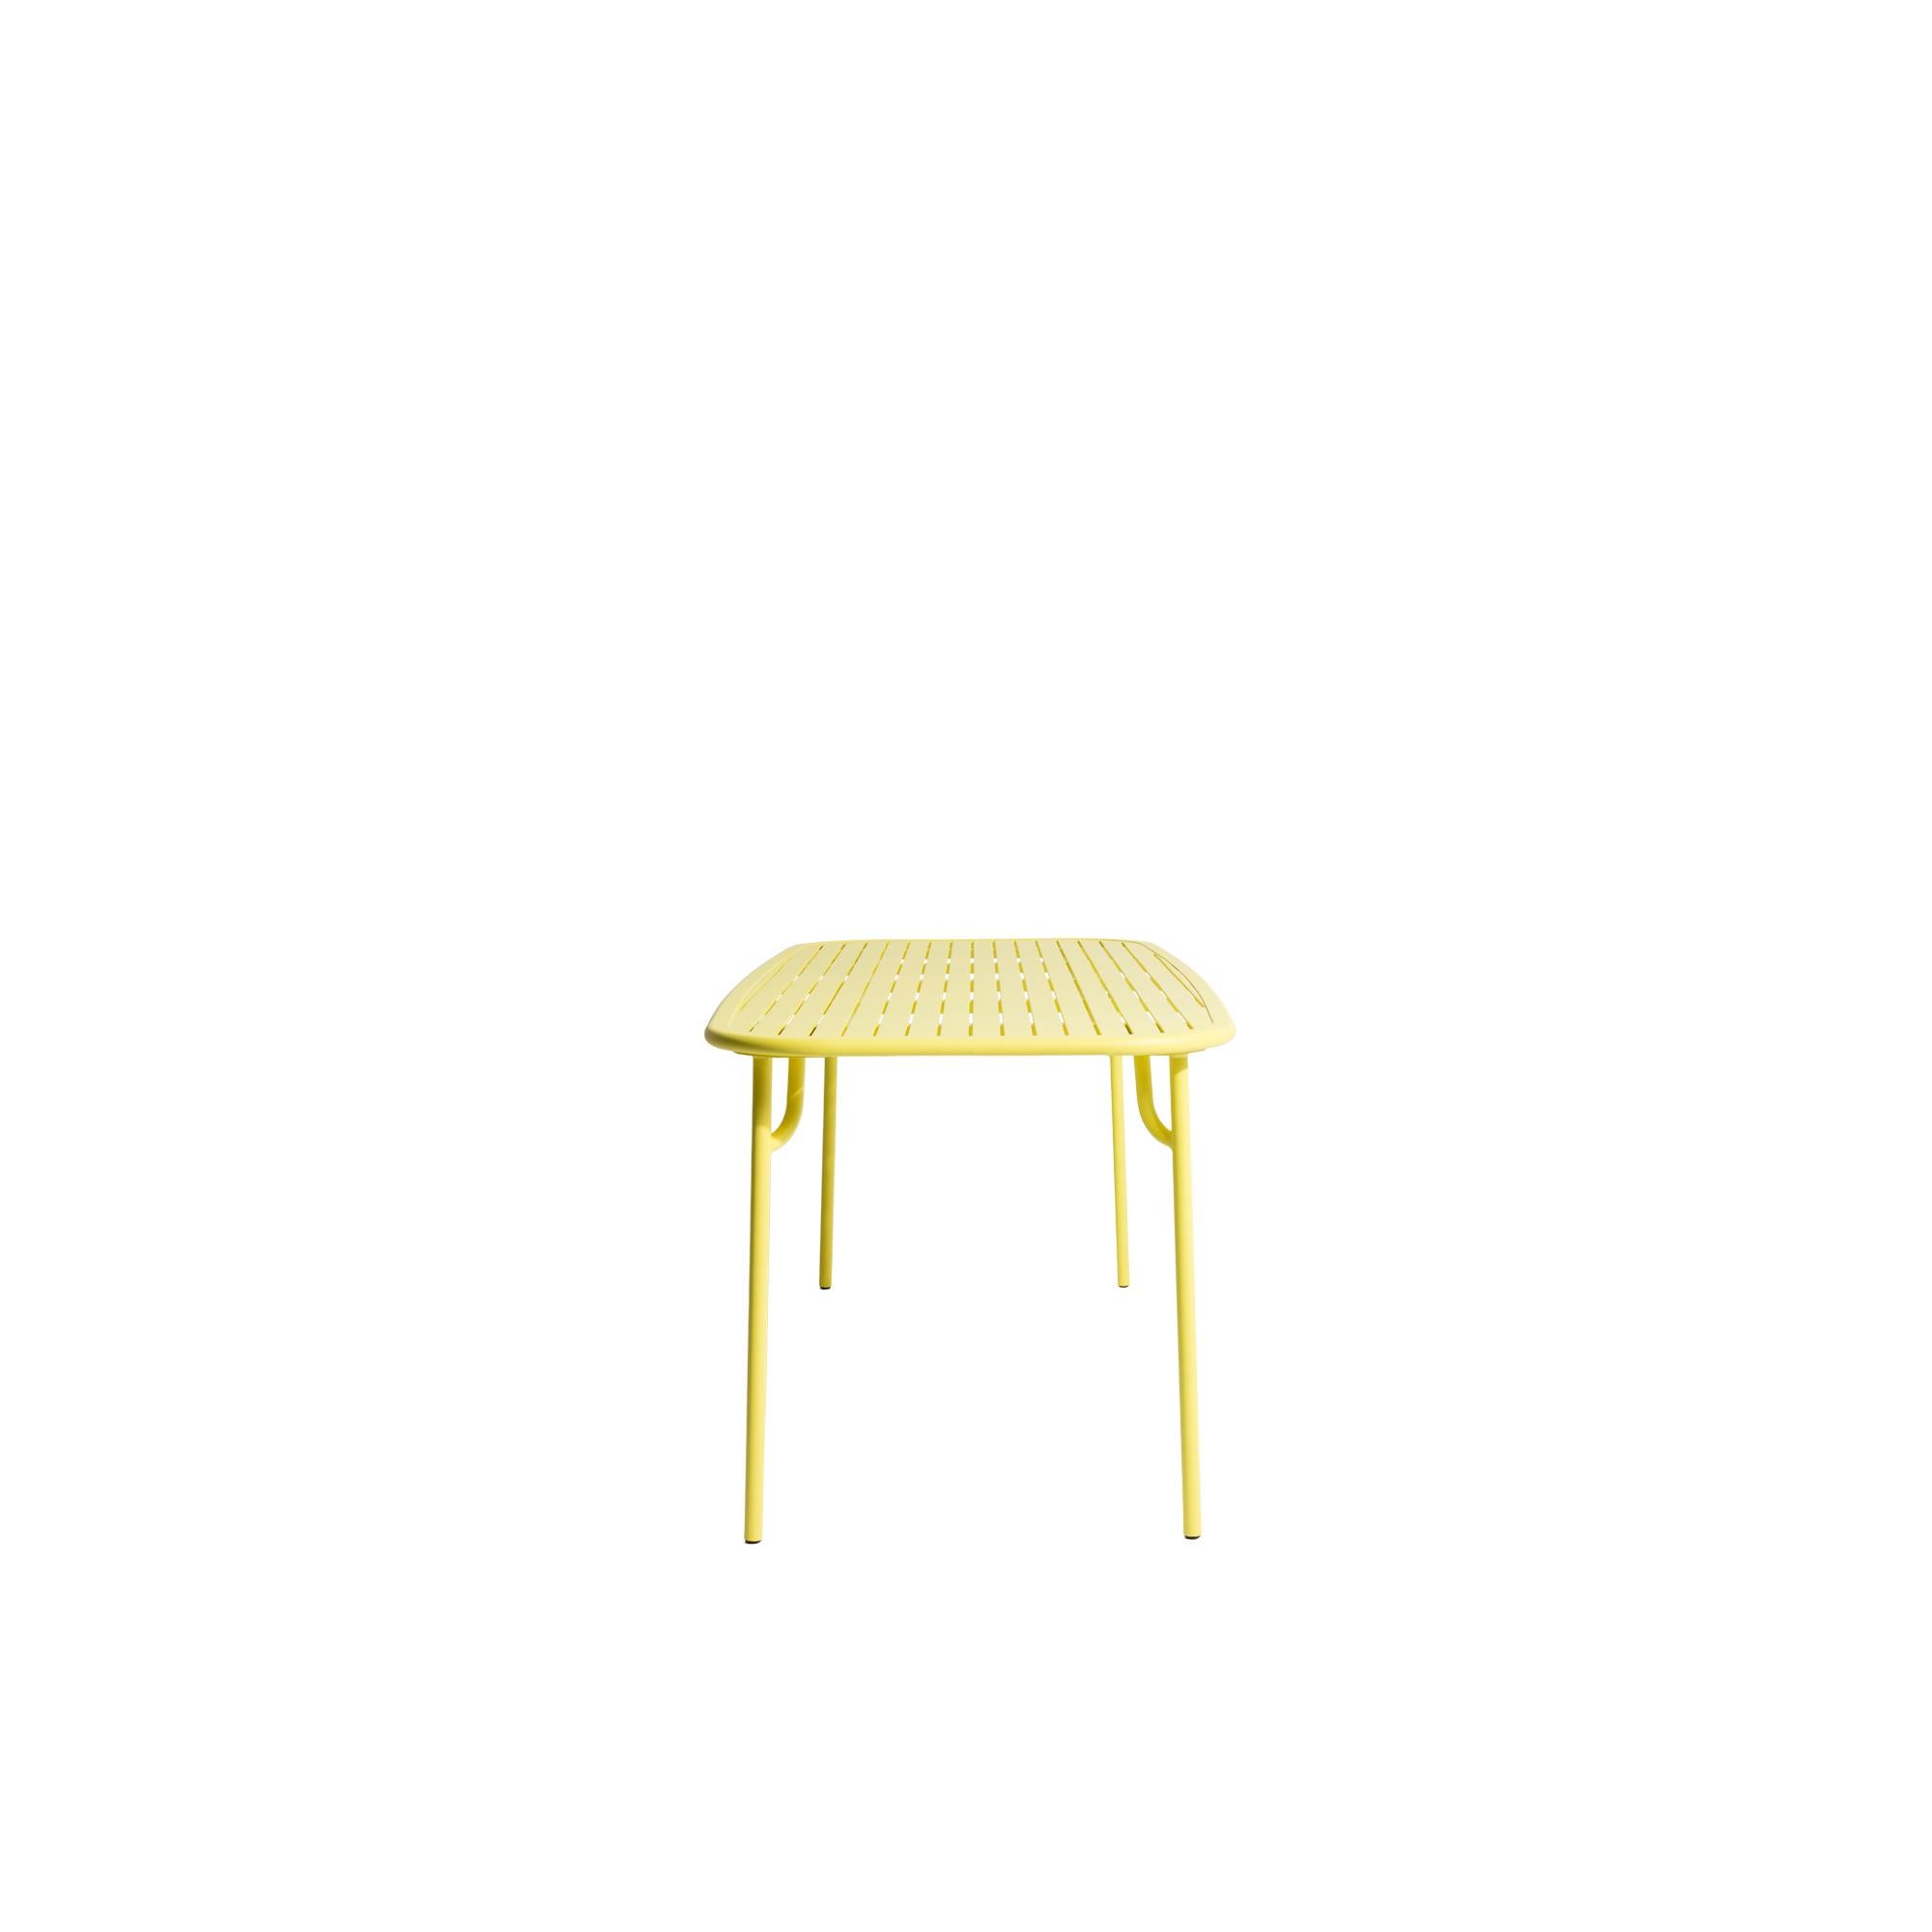 Table de salle à manger rectangulaire moyenne Petite Friture Week-End en aluminium jaune avec lattes par Studio BrichetZiegler, 2017.

La collection week-end est une gamme complète de mobilier d'extérieur, en peinture époxy aluminium grainé,